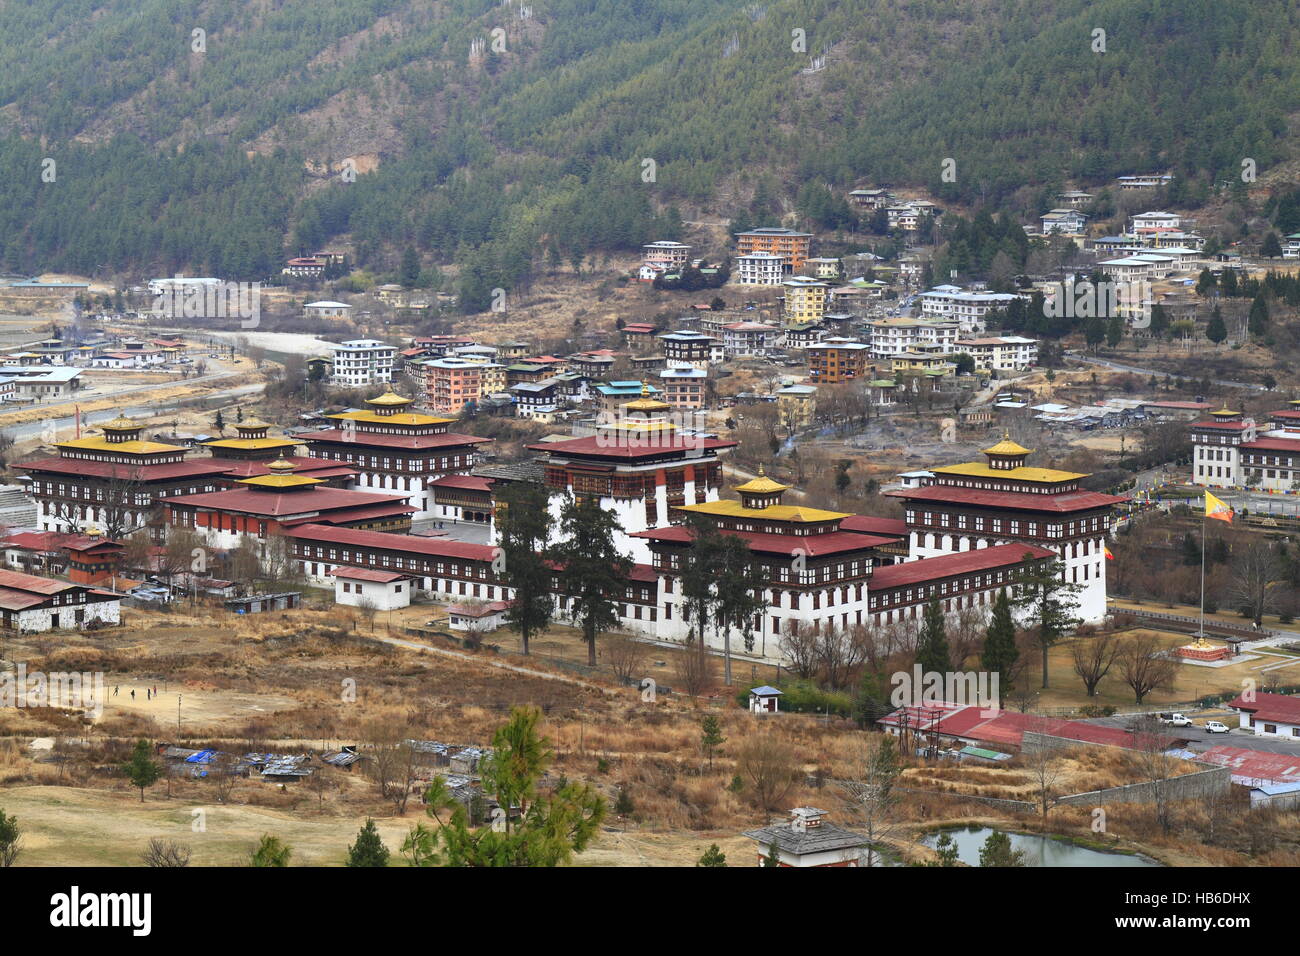 Tashichho Dzong in Thimphu Foto Stock